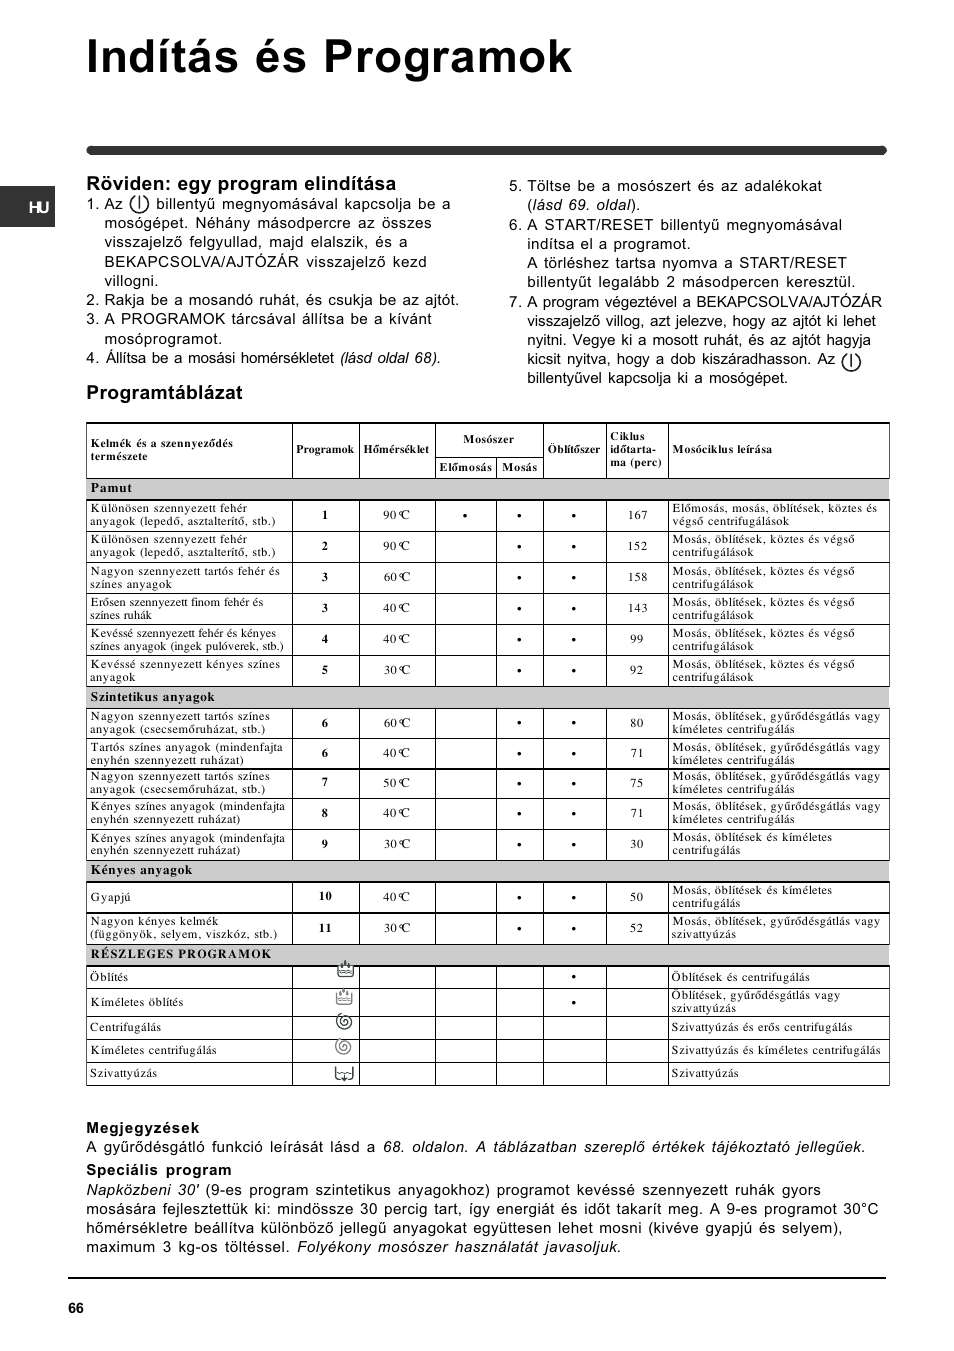 Indítás és programok, Programtáblázat, Röviden: egy program elindítása |  Indesit WIN 121 User Manual | Page 66 / 72